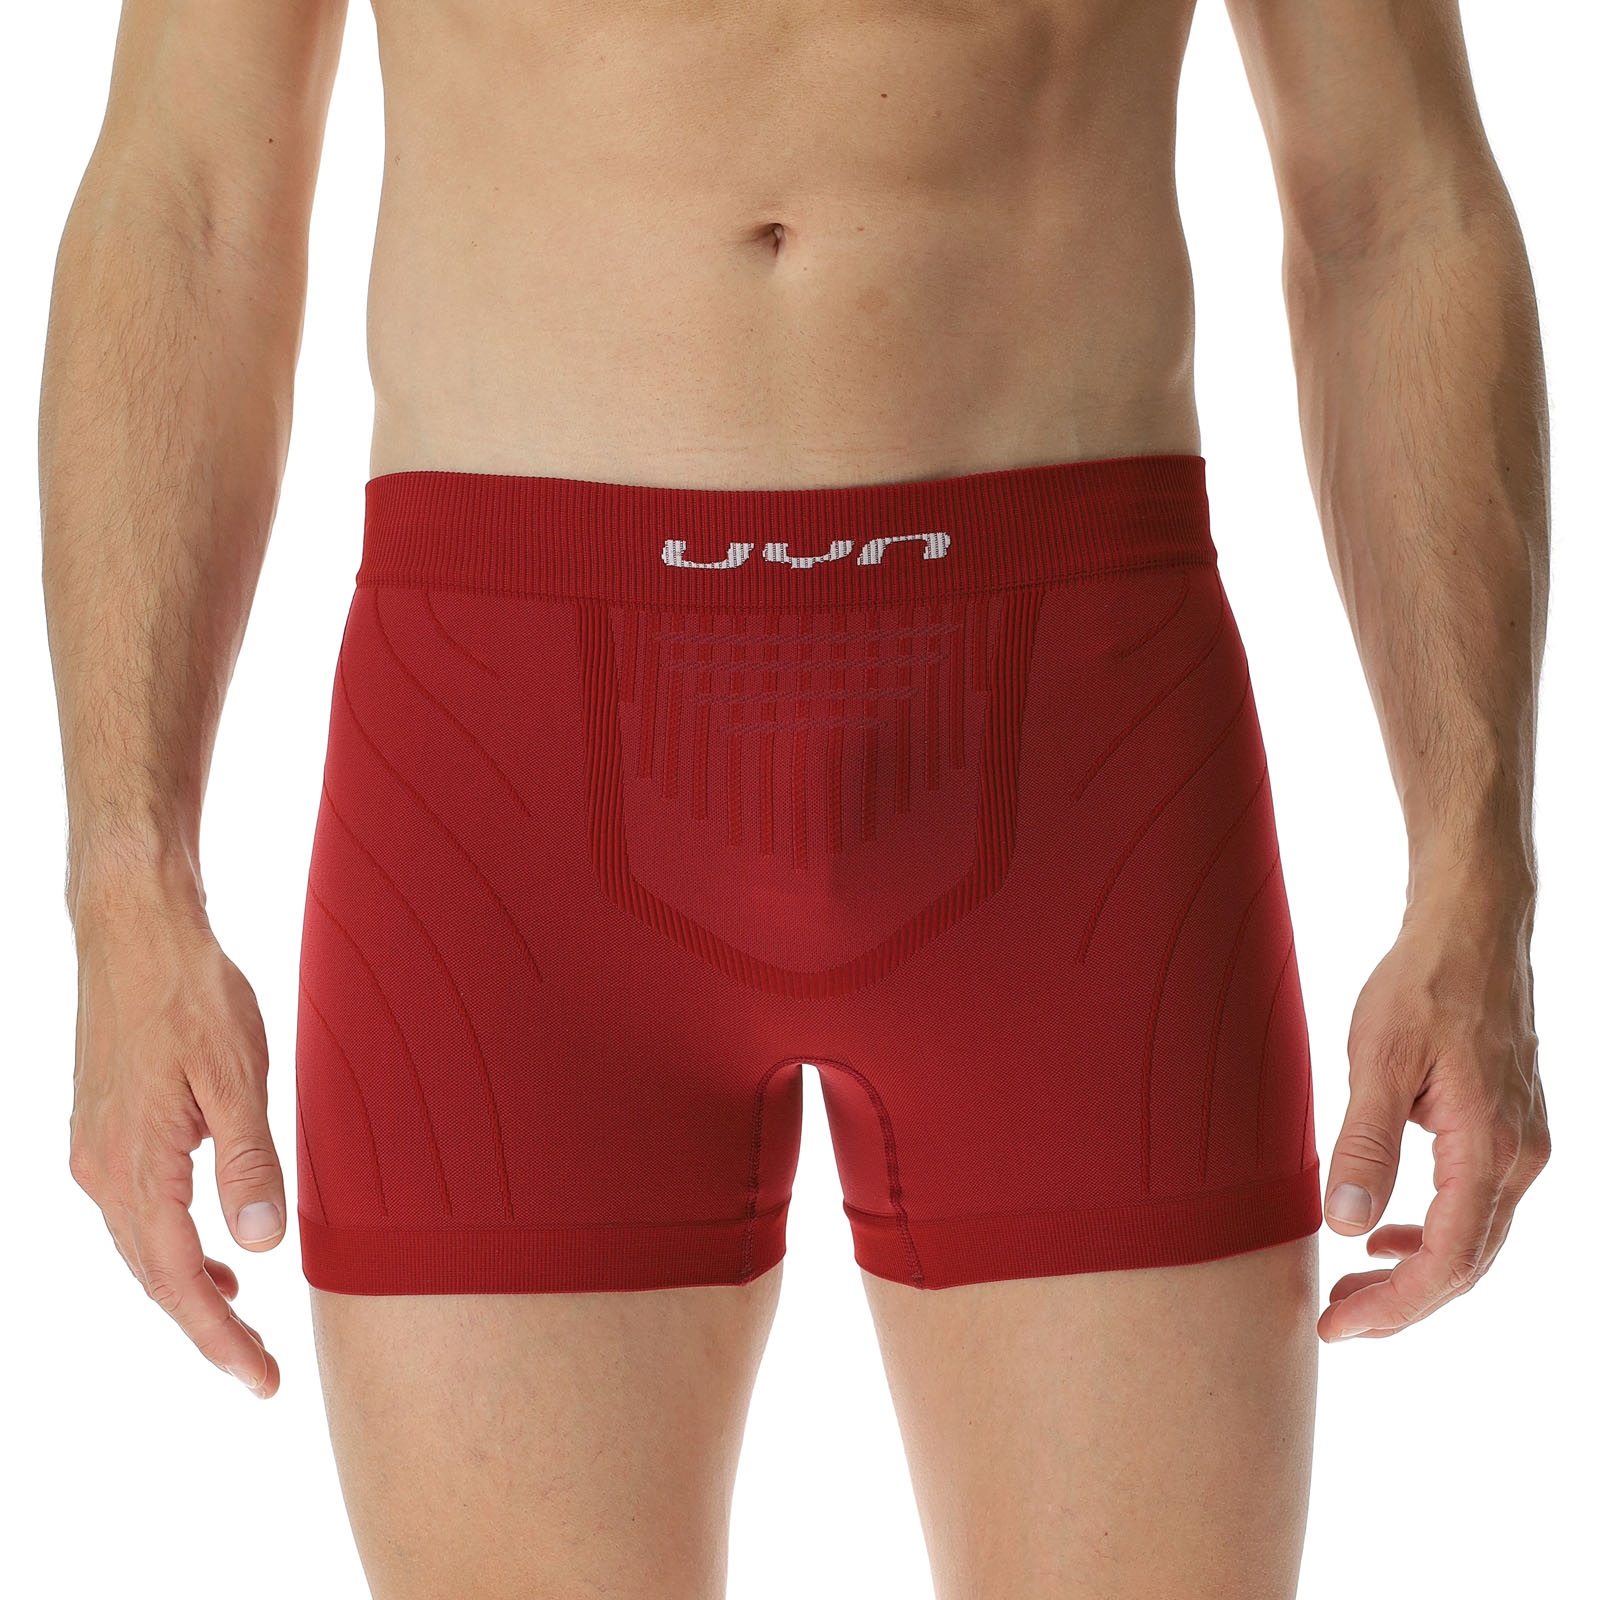 Produktbild von UYN Motyon 2.0 Boxershorts Herren - Sofisticated Red